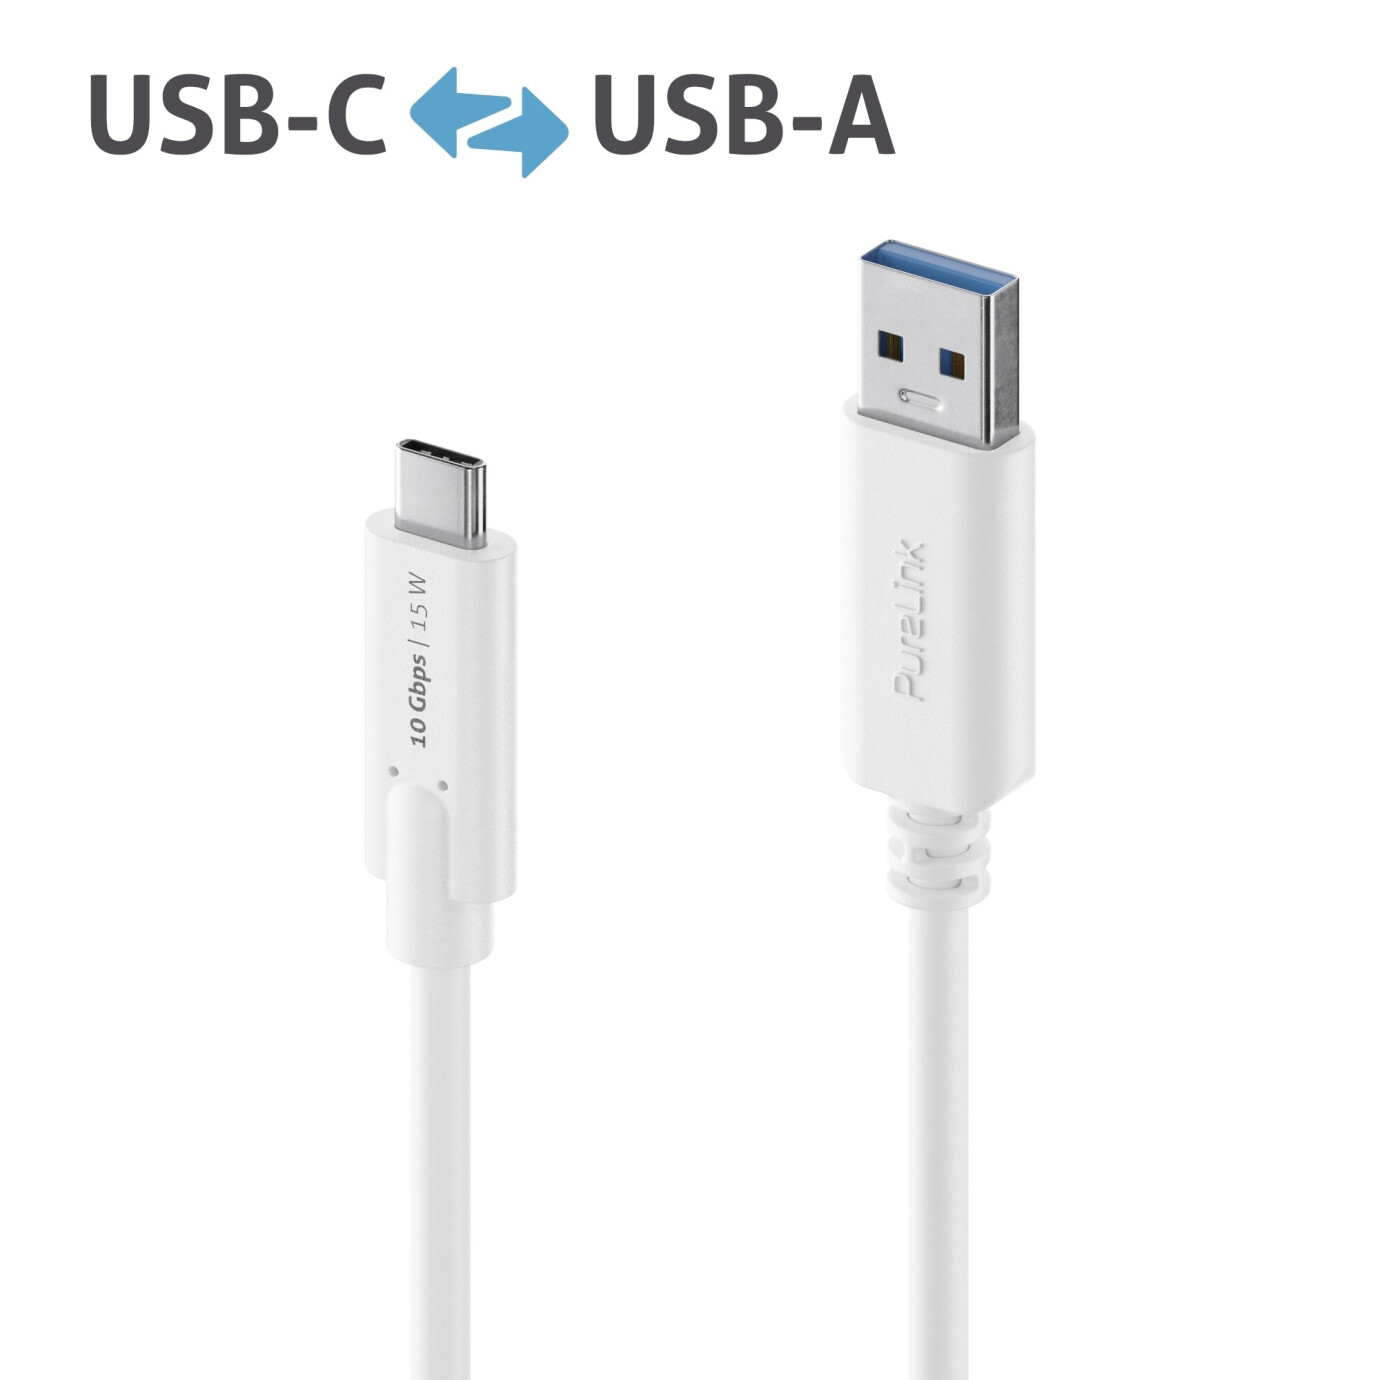 Purelink IS2610-005 USB-C auf USB-A (Gen 2) Kabel 0,5m weiß